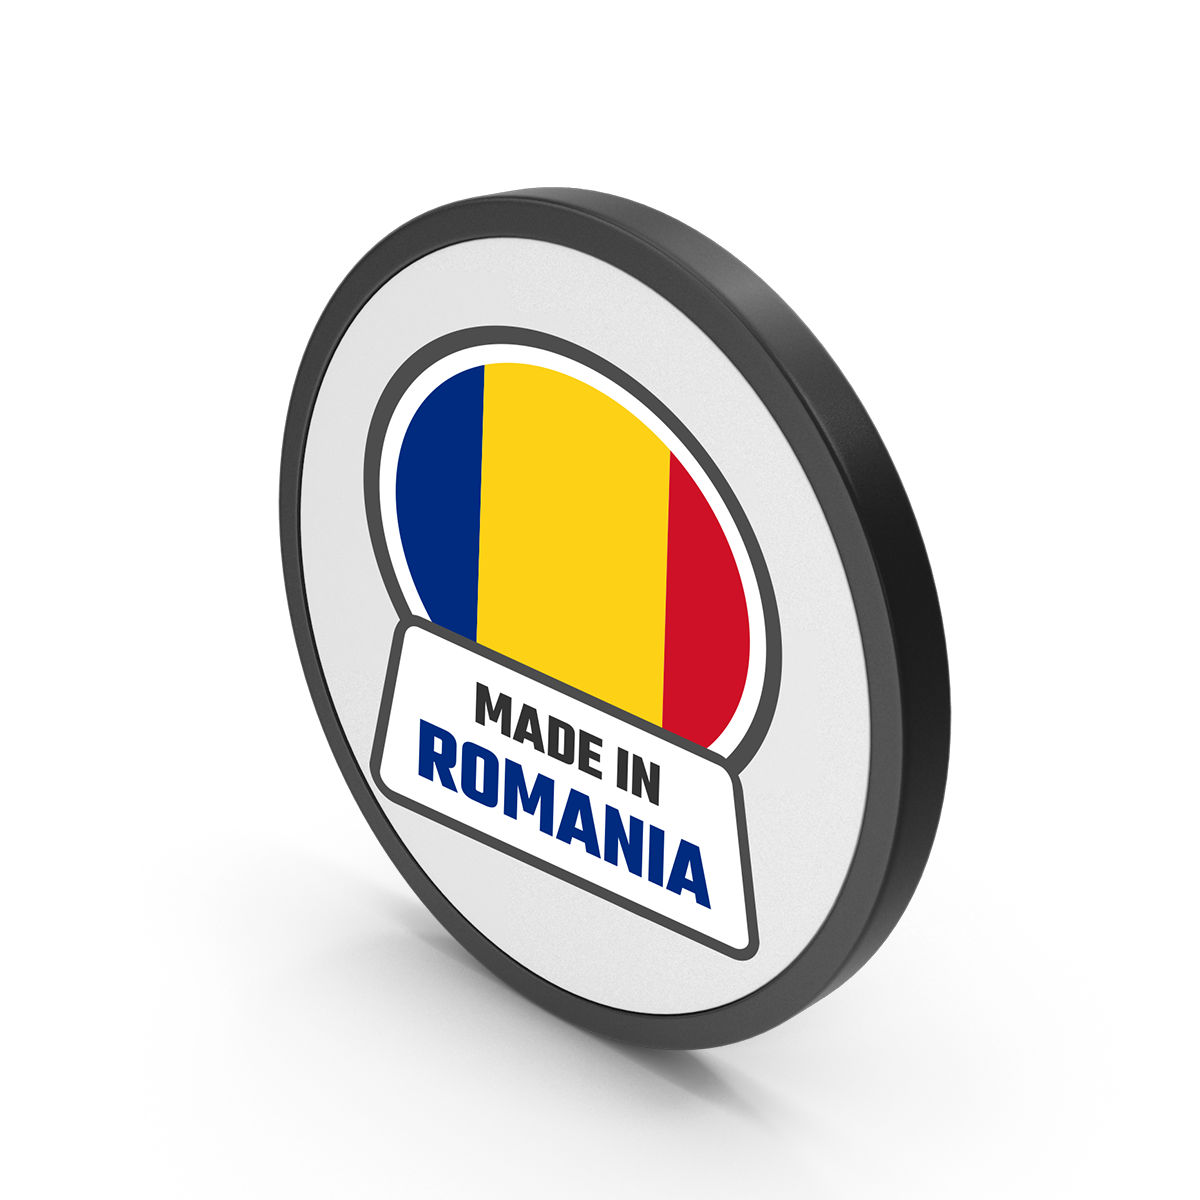 Made in Romania Area